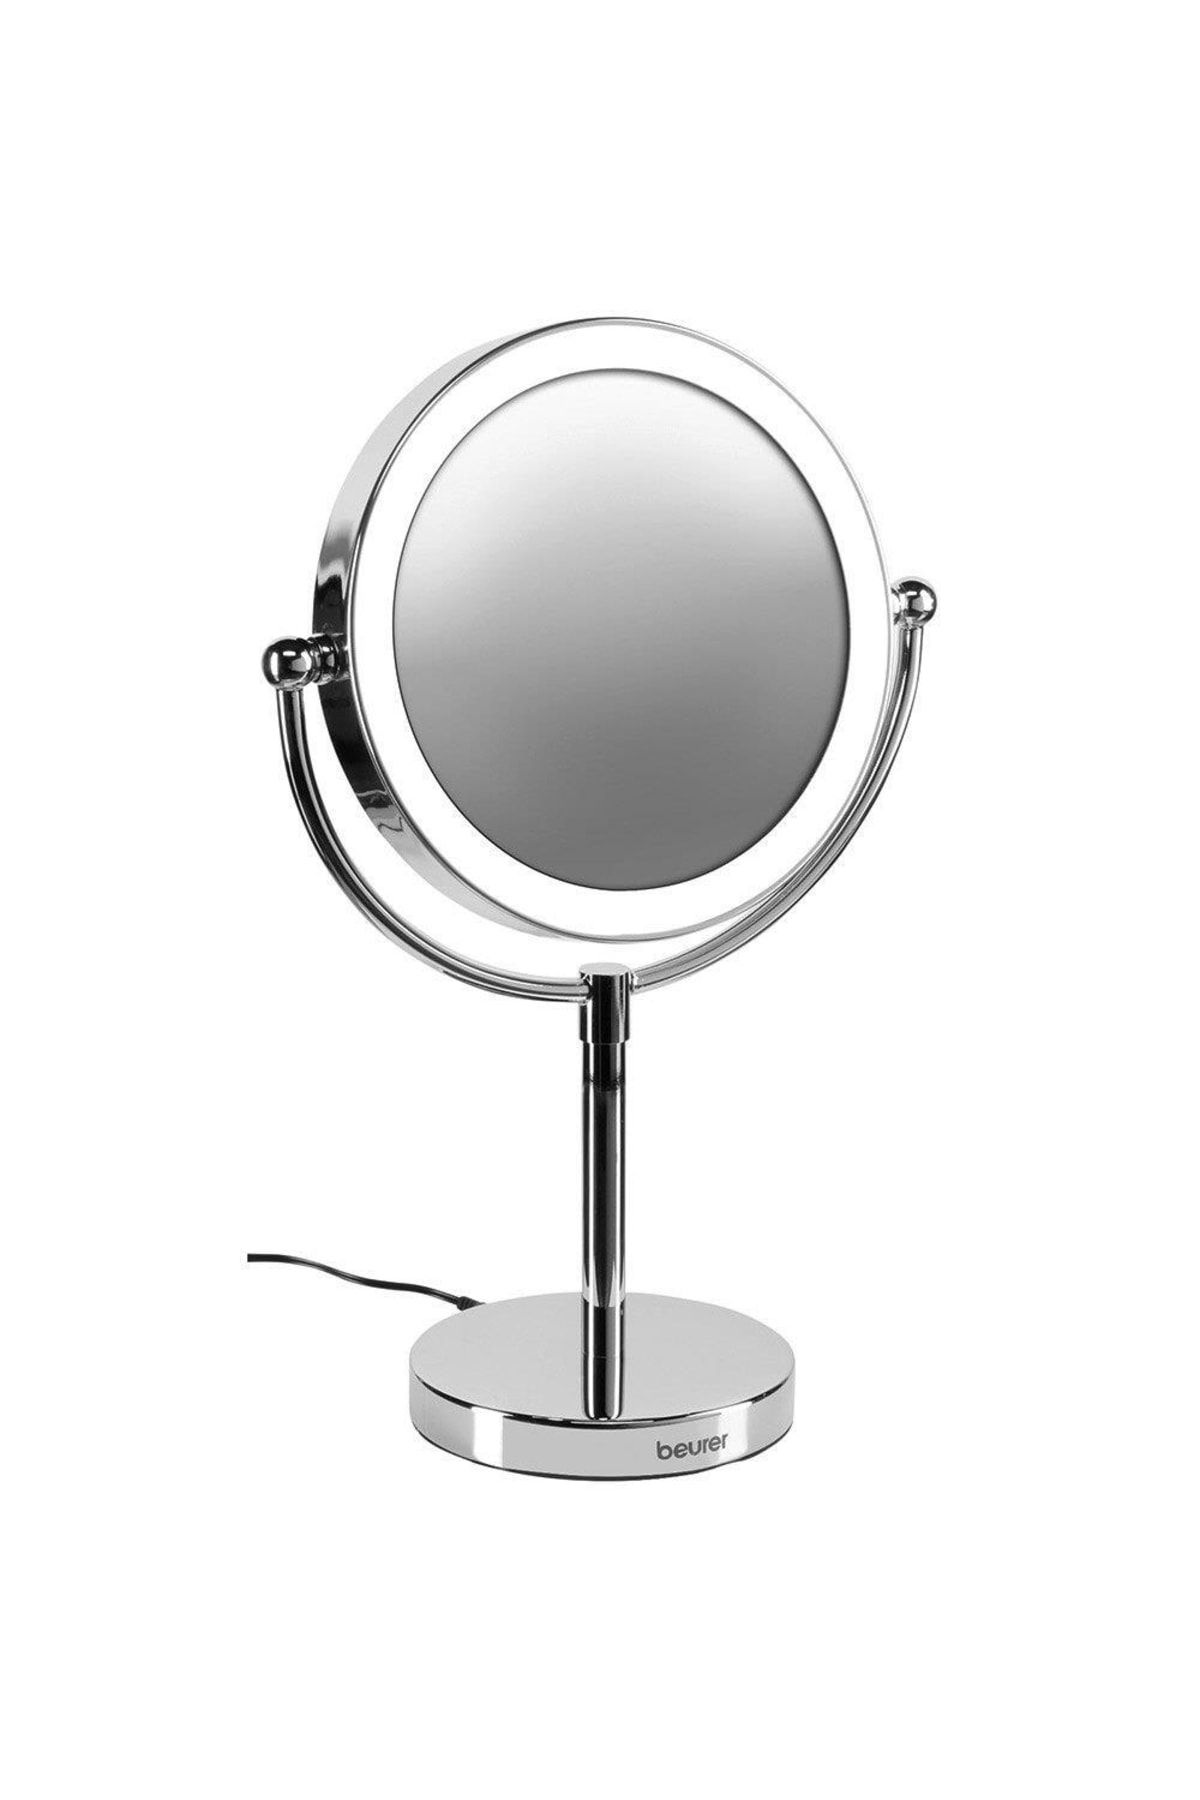 Beurer Bs 69 Işıklı Fonksiyonel Makyaj Aynası Çift Taraflı